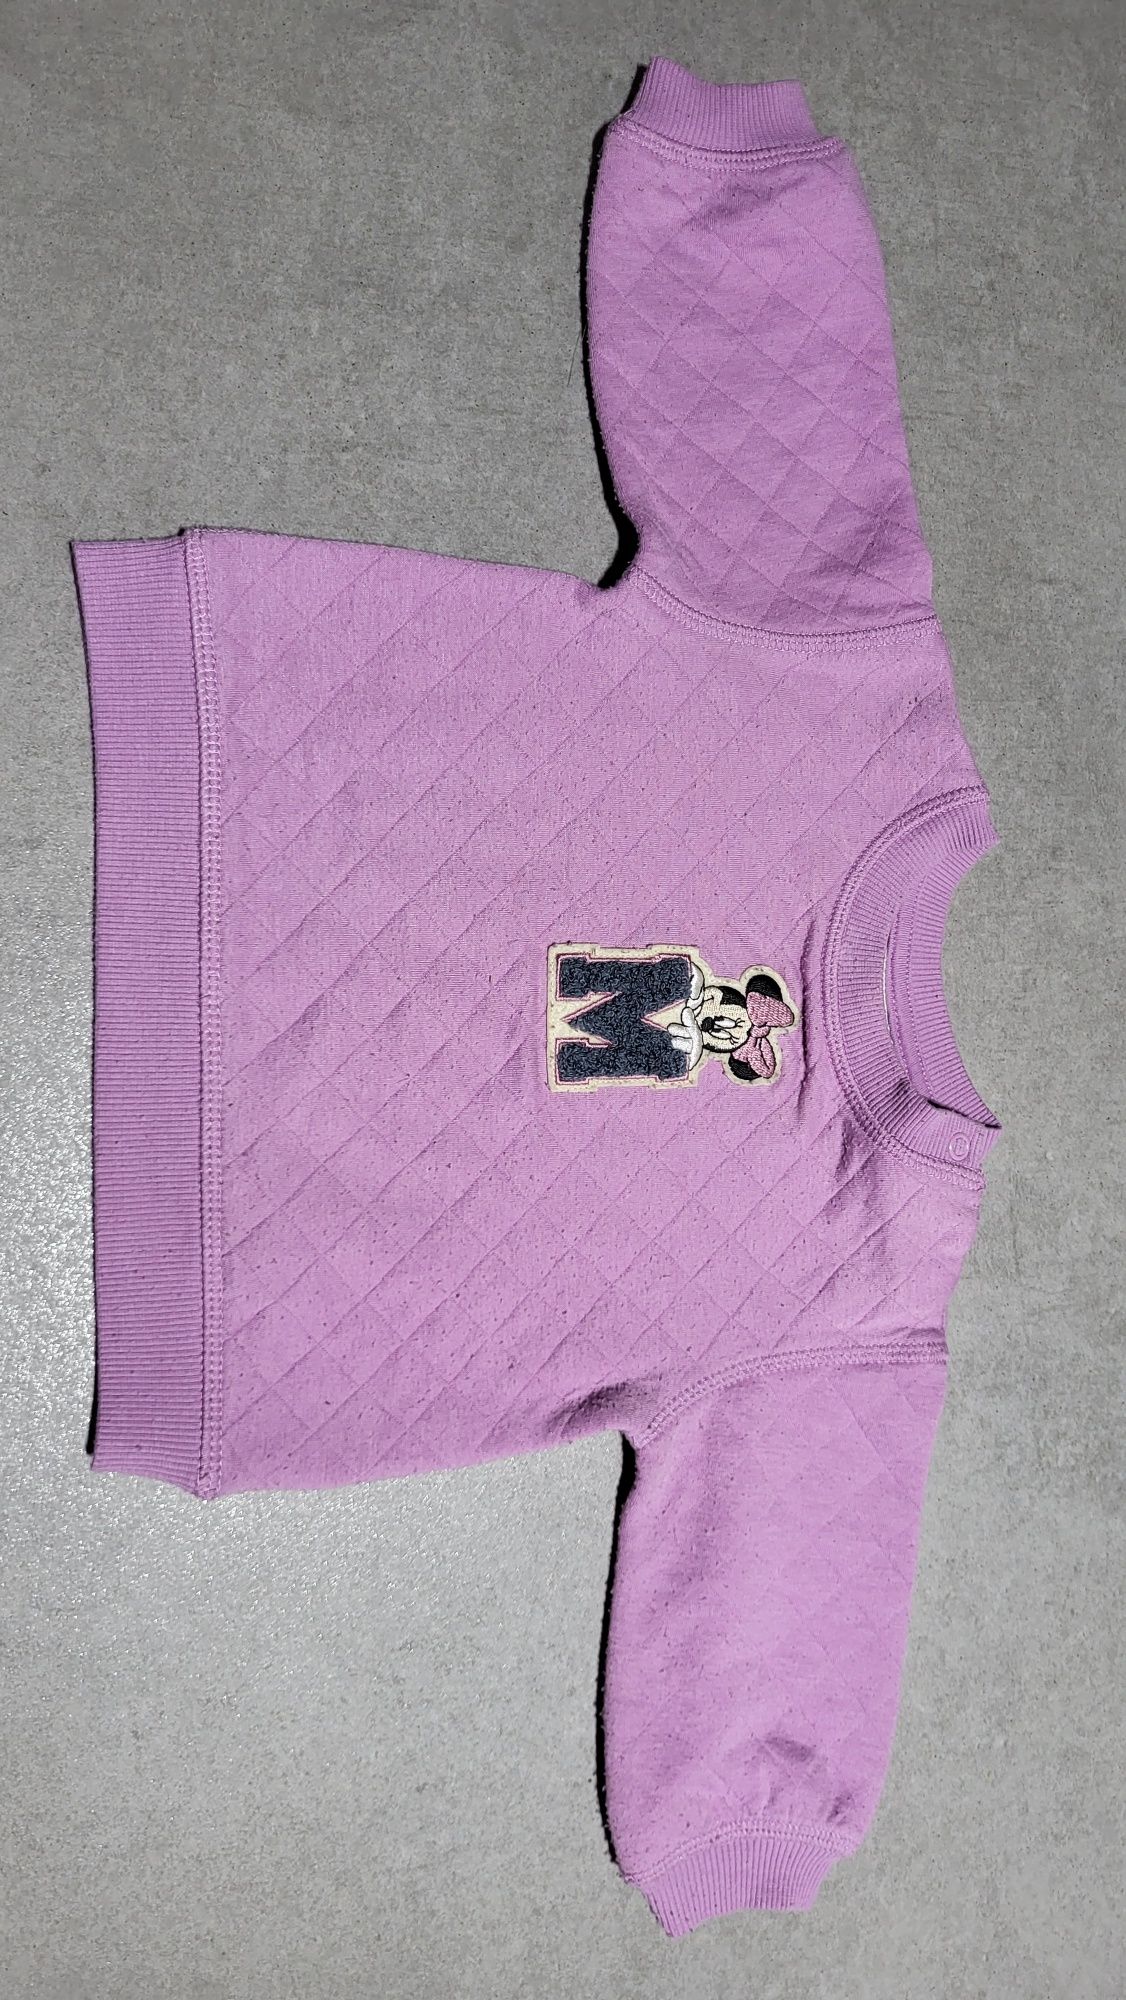 H&M bluza fioletowa myszka Minnie rozm  68 -74